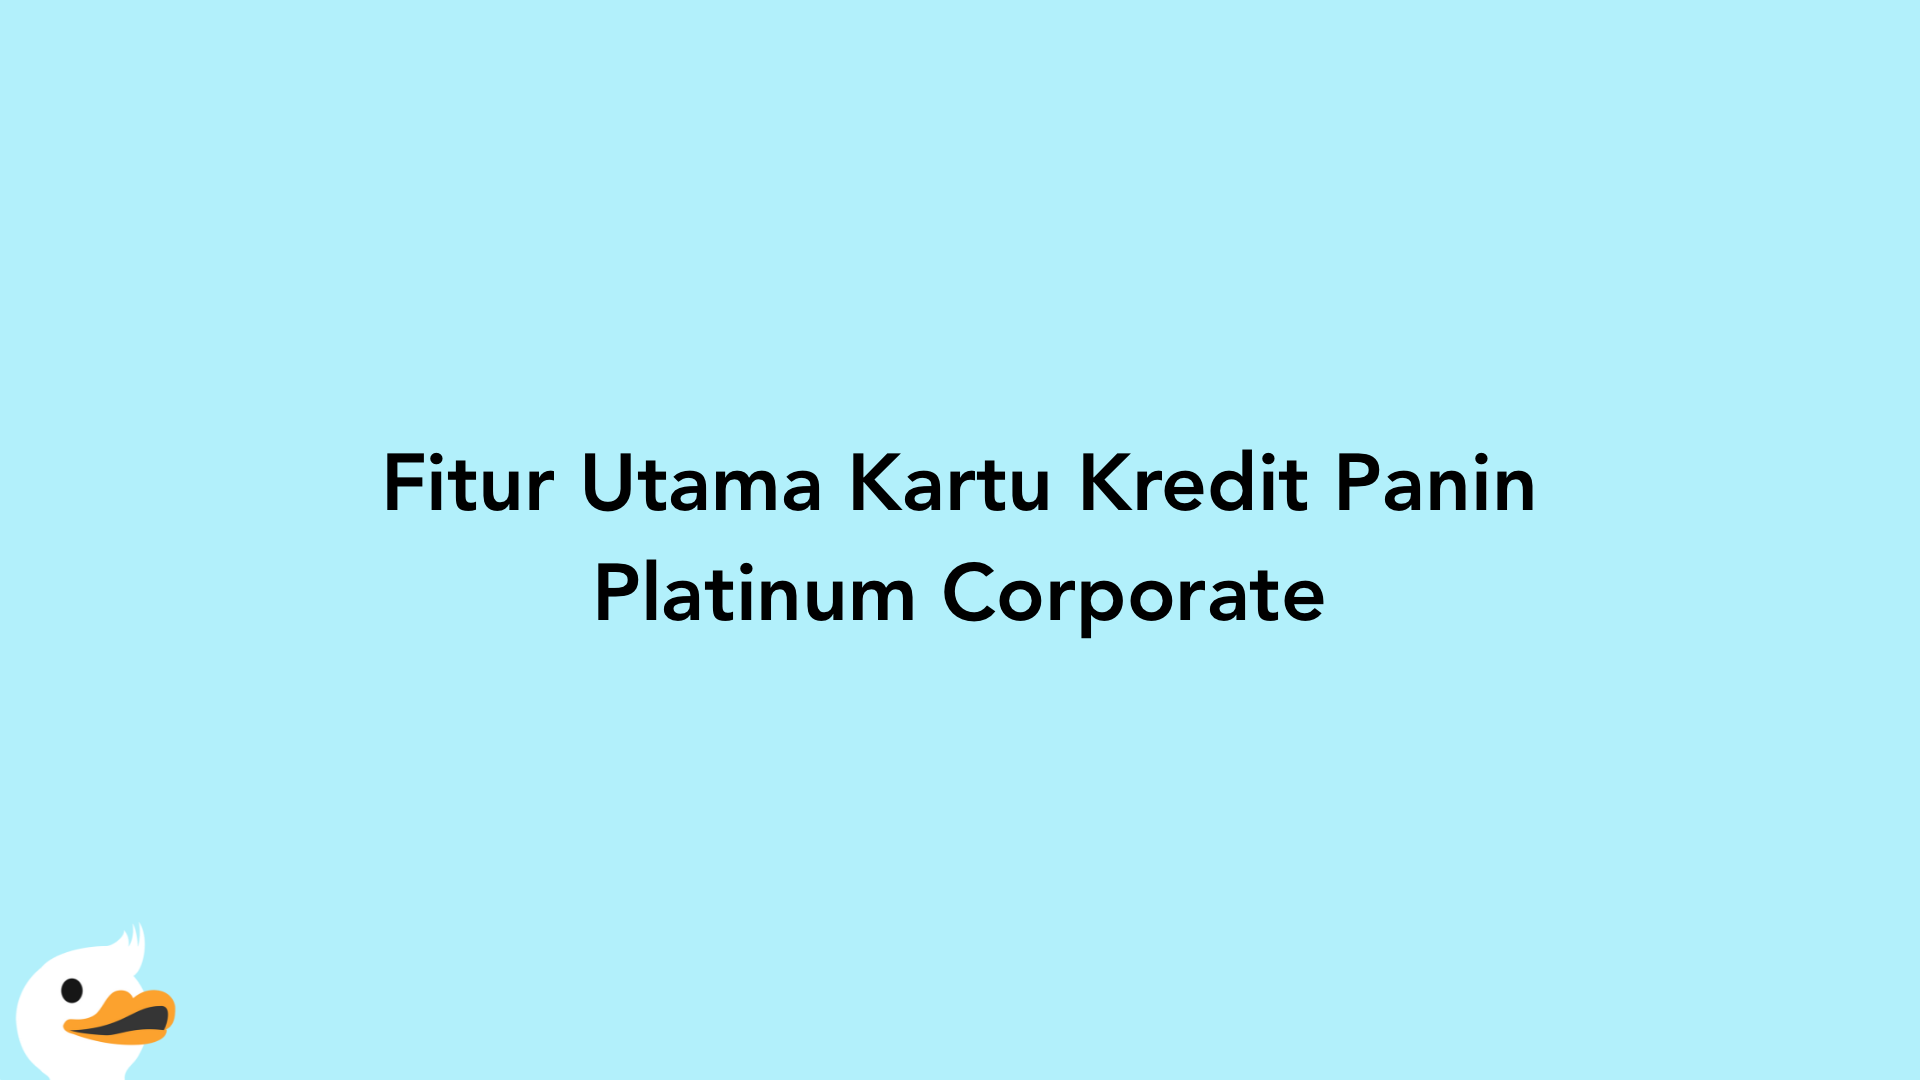 Fitur Utama Kartu Kredit Panin Platinum Corporate